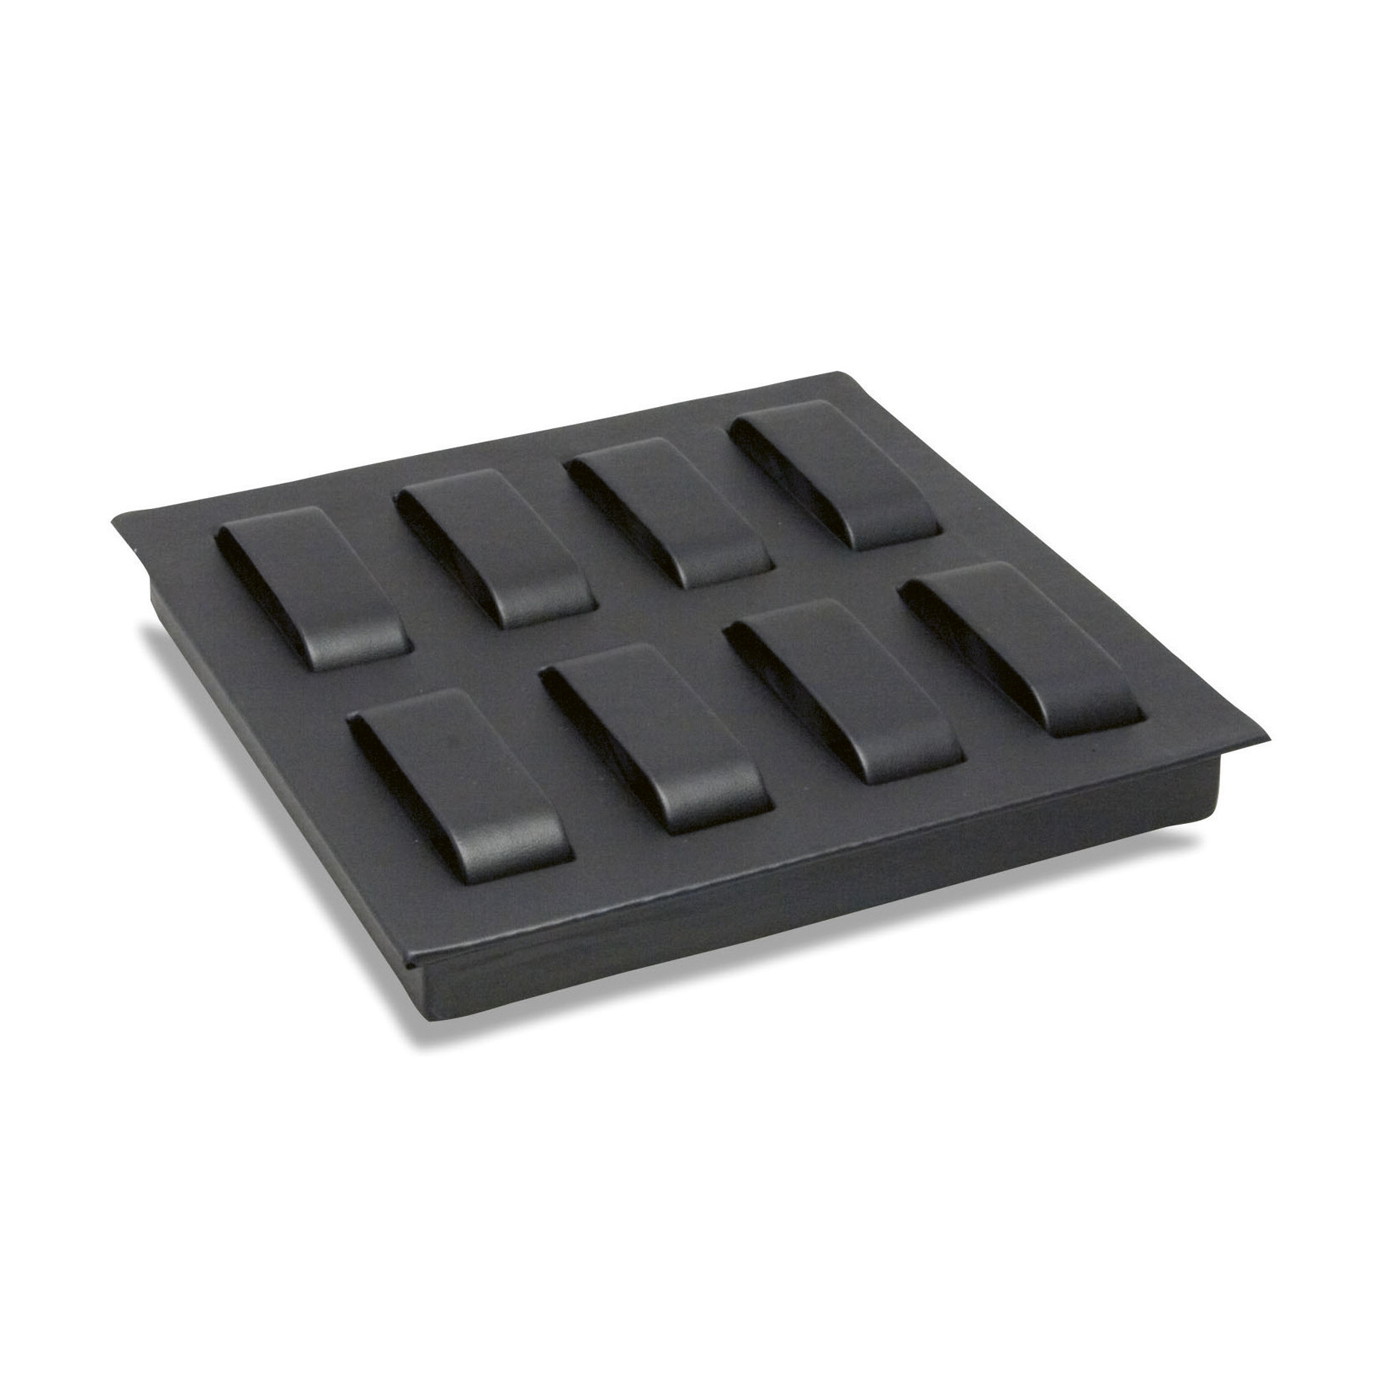 Tray System Einlage, schwarz, für 8 Uhren, 224x 224 mm - 1 Stück